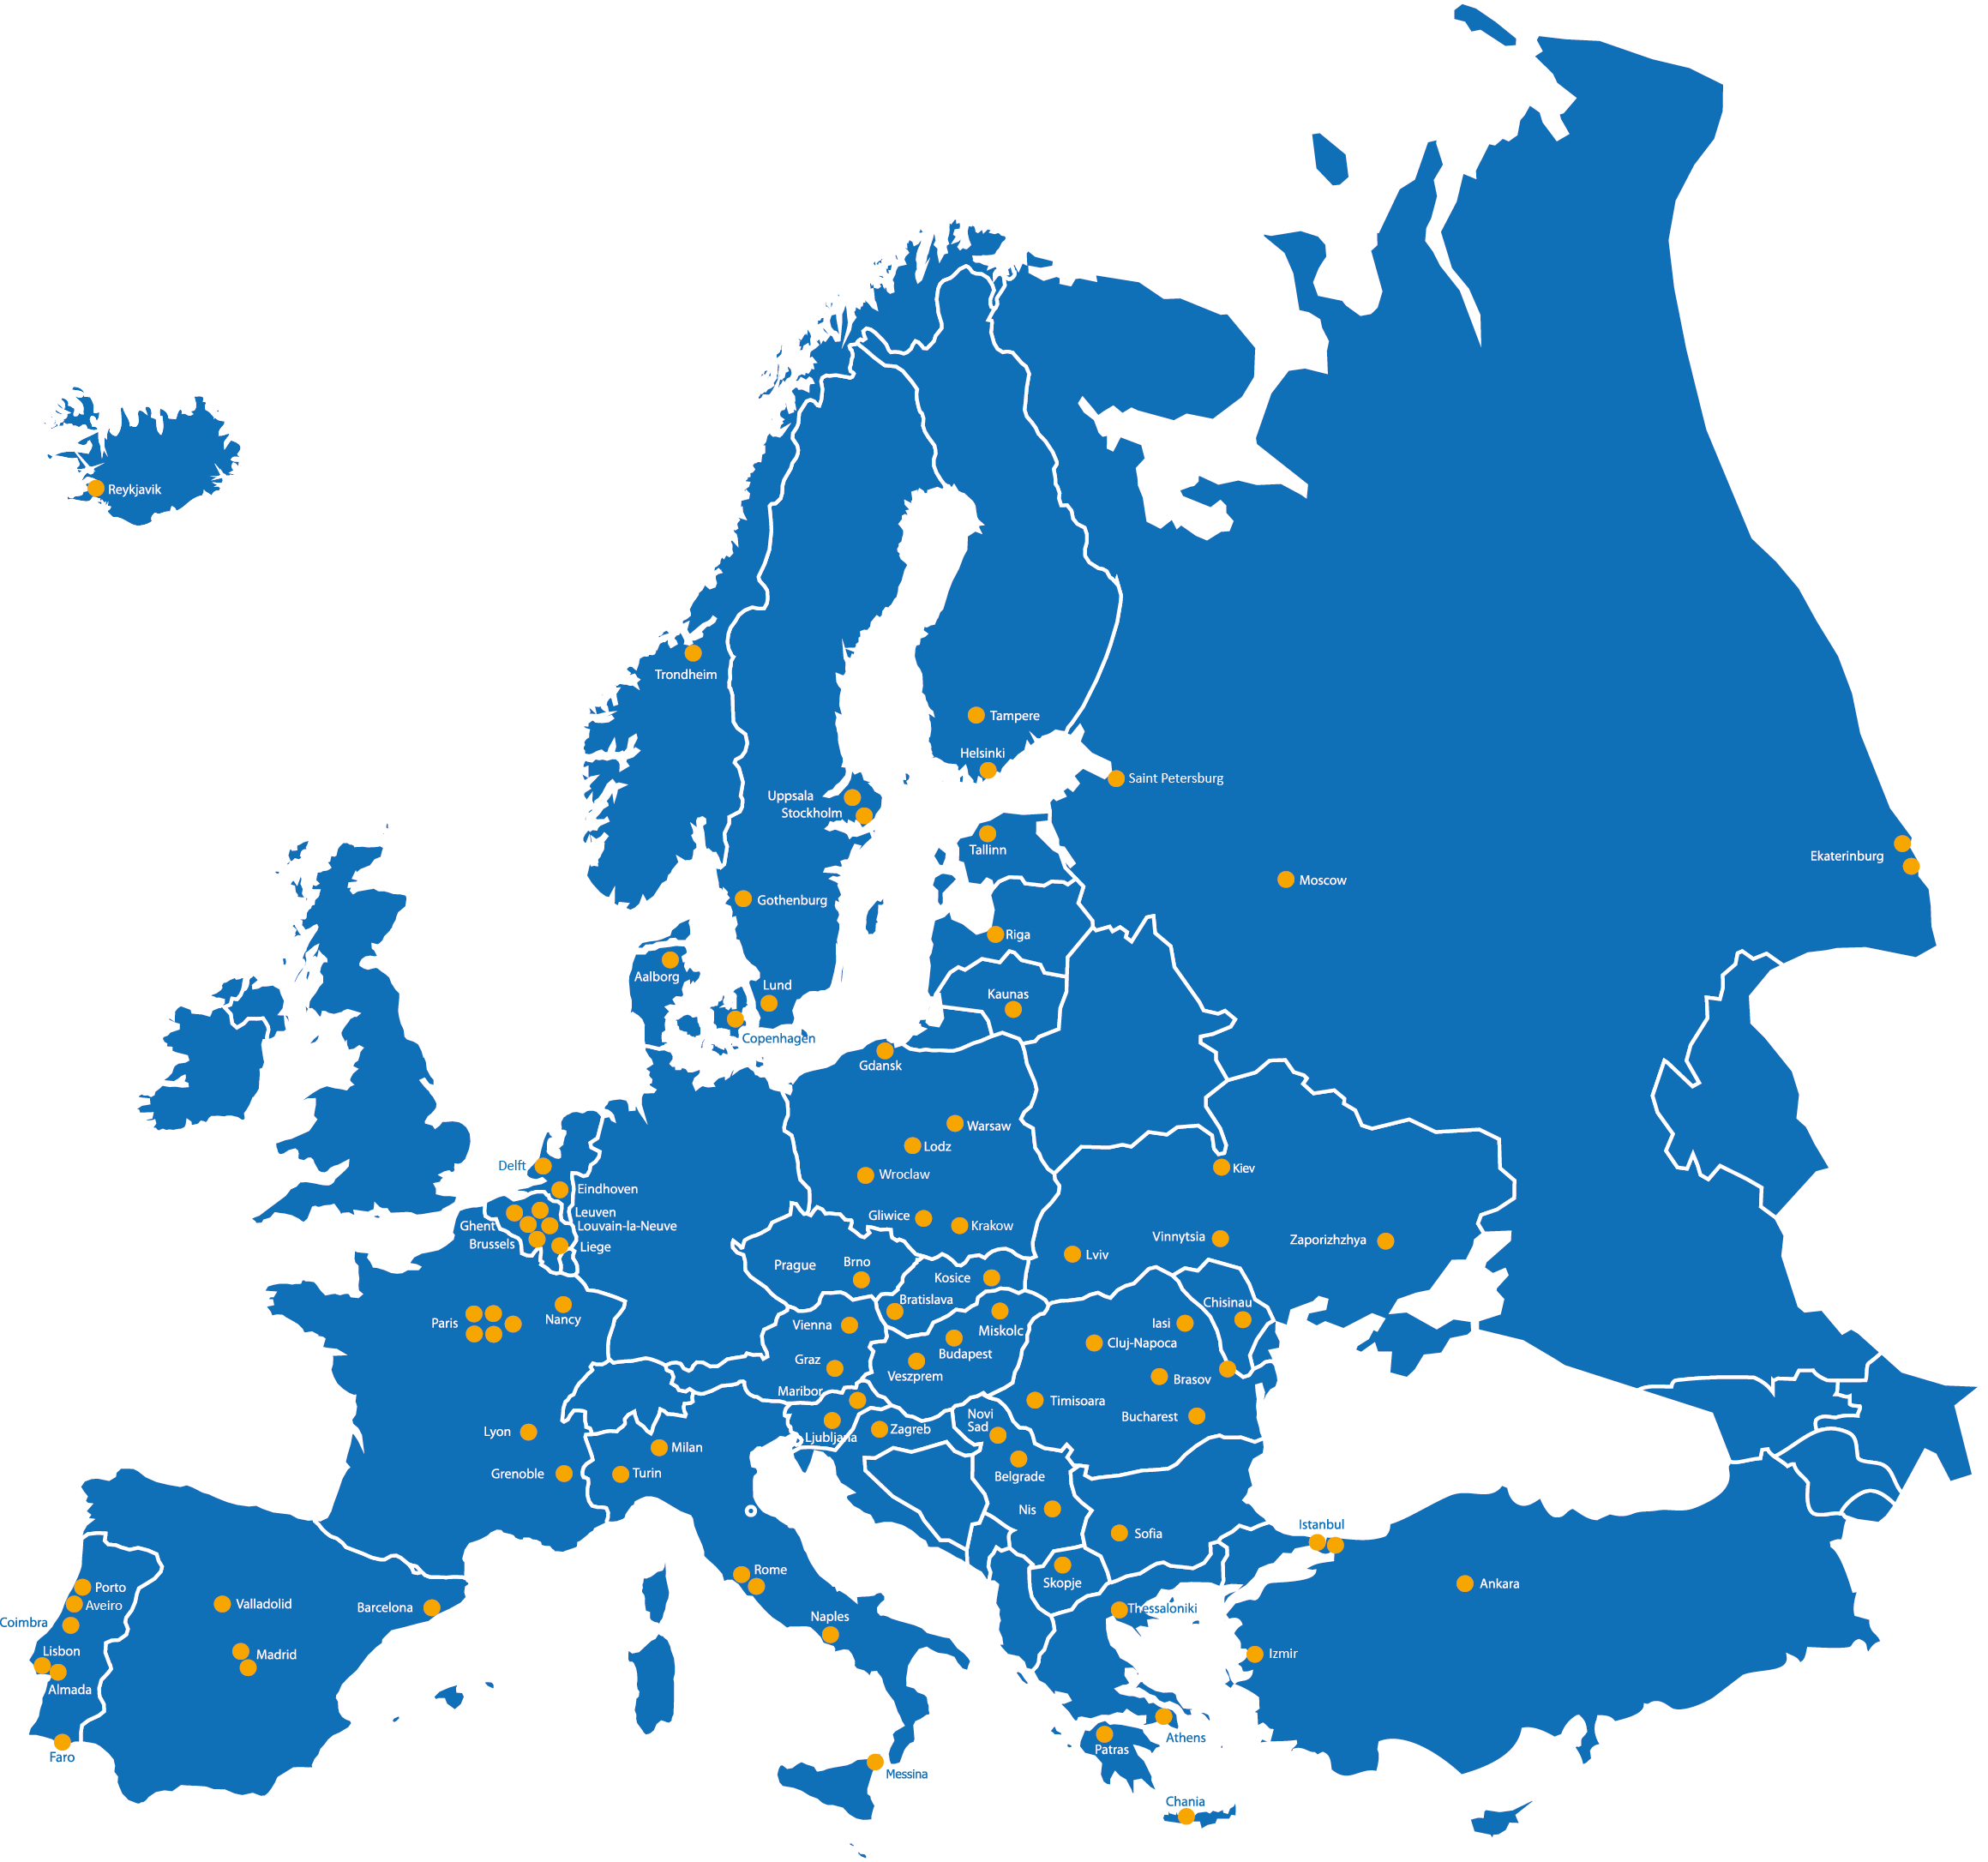 Europa de. Очертания Европы. Карта - Европа. Векторная карта Европы. Карта Европы на прозрачном фоне.